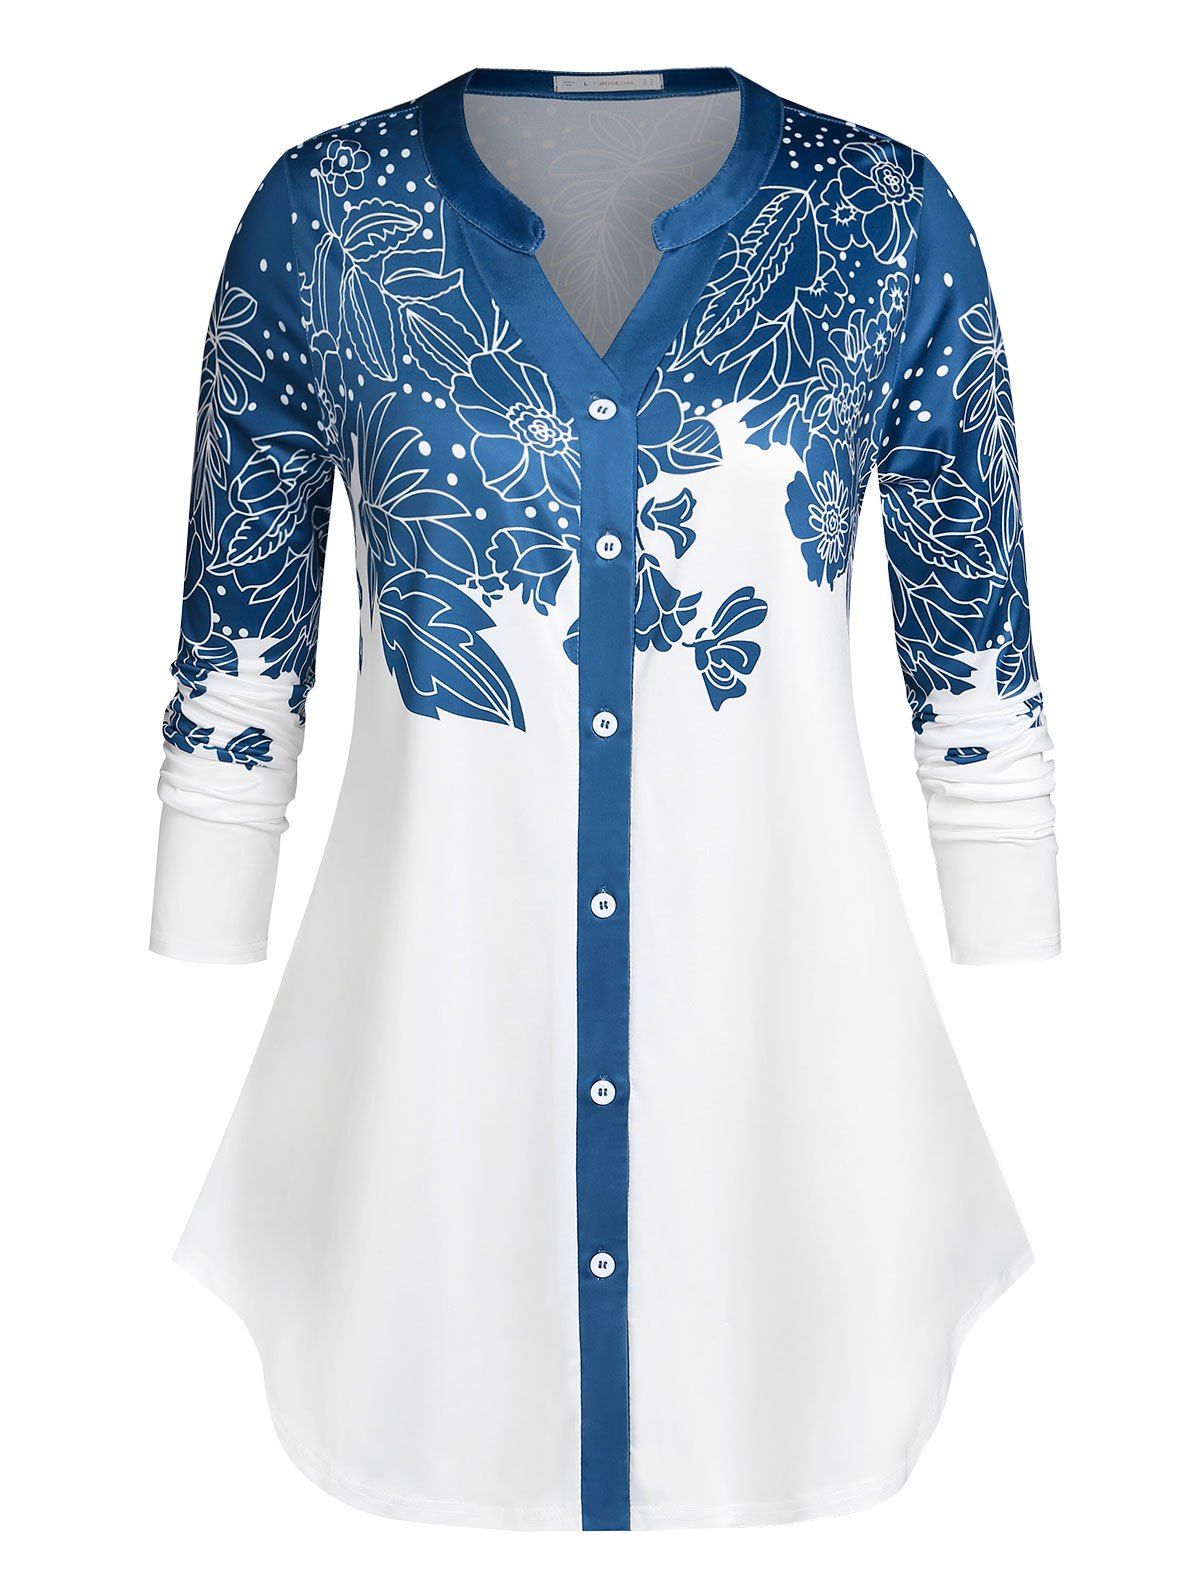 Plus Size Button Up Floral Print Shirt - multicolor 5X